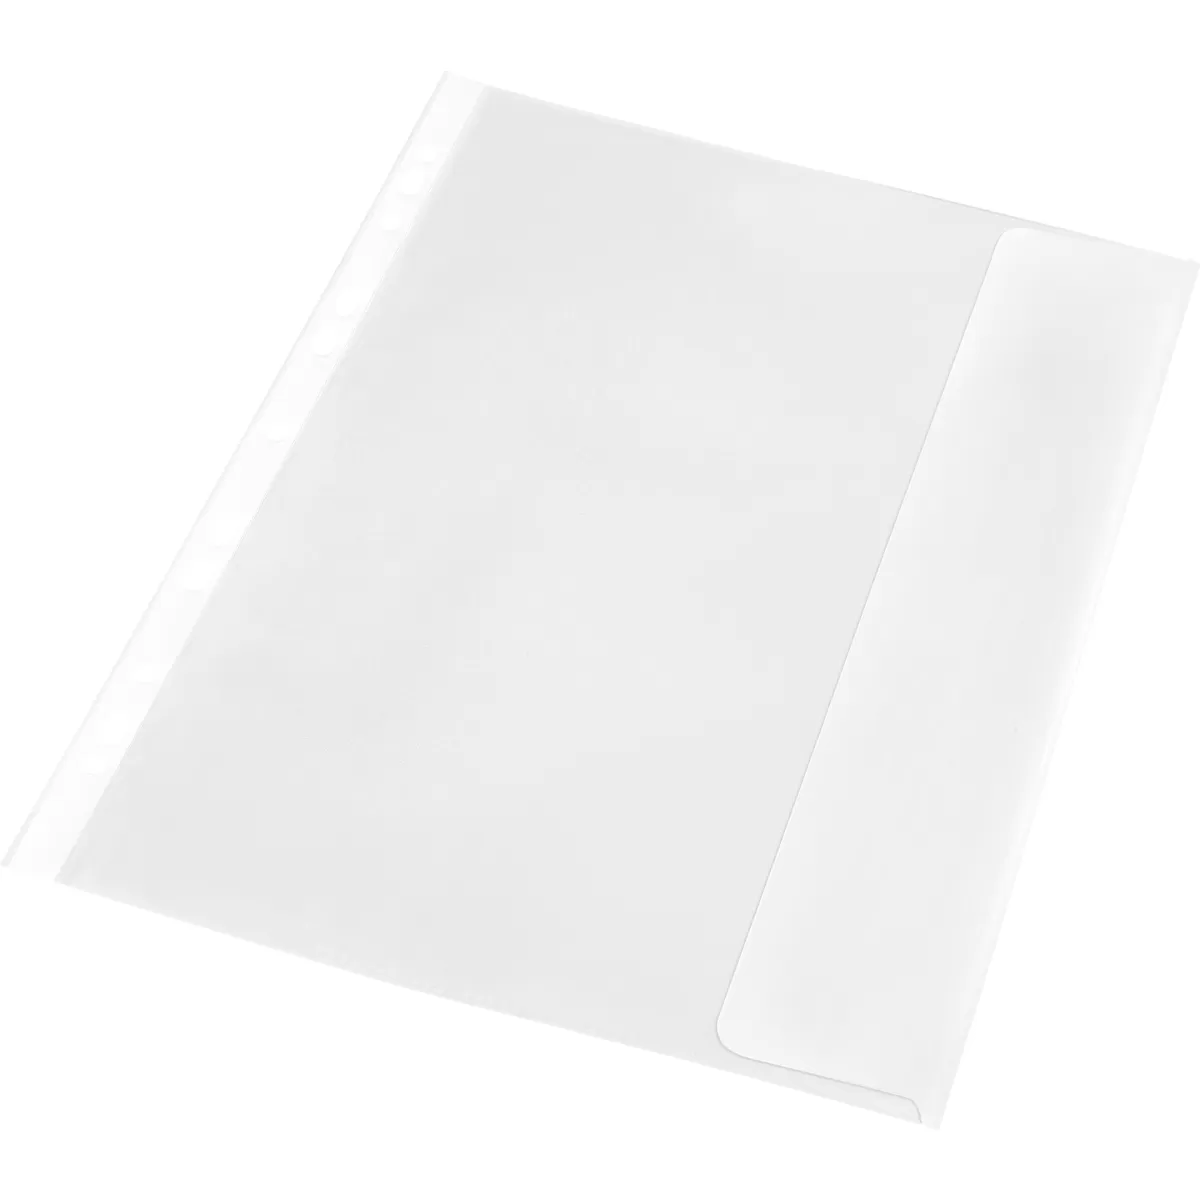 Panta Plast Джоб за документи, с капак, A4, 140 µm, мат, 10 броя